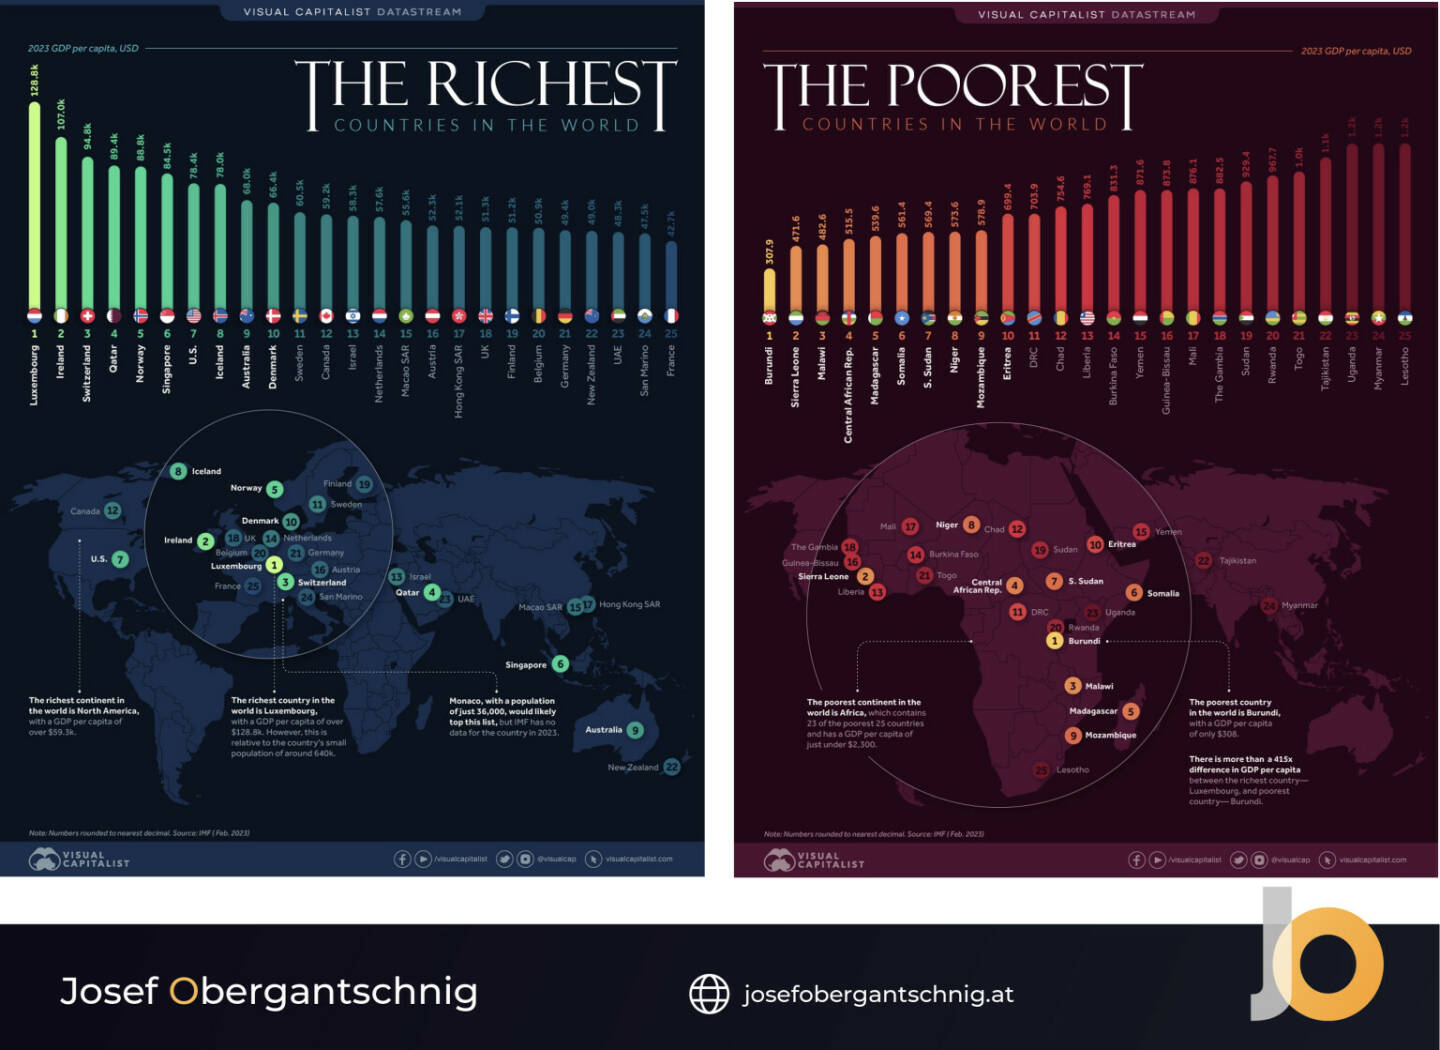 ABC Audio Business Chart #38: Wer sind die reichsten und ärmsten Länder der Welt? (Josef Obergantschnig)